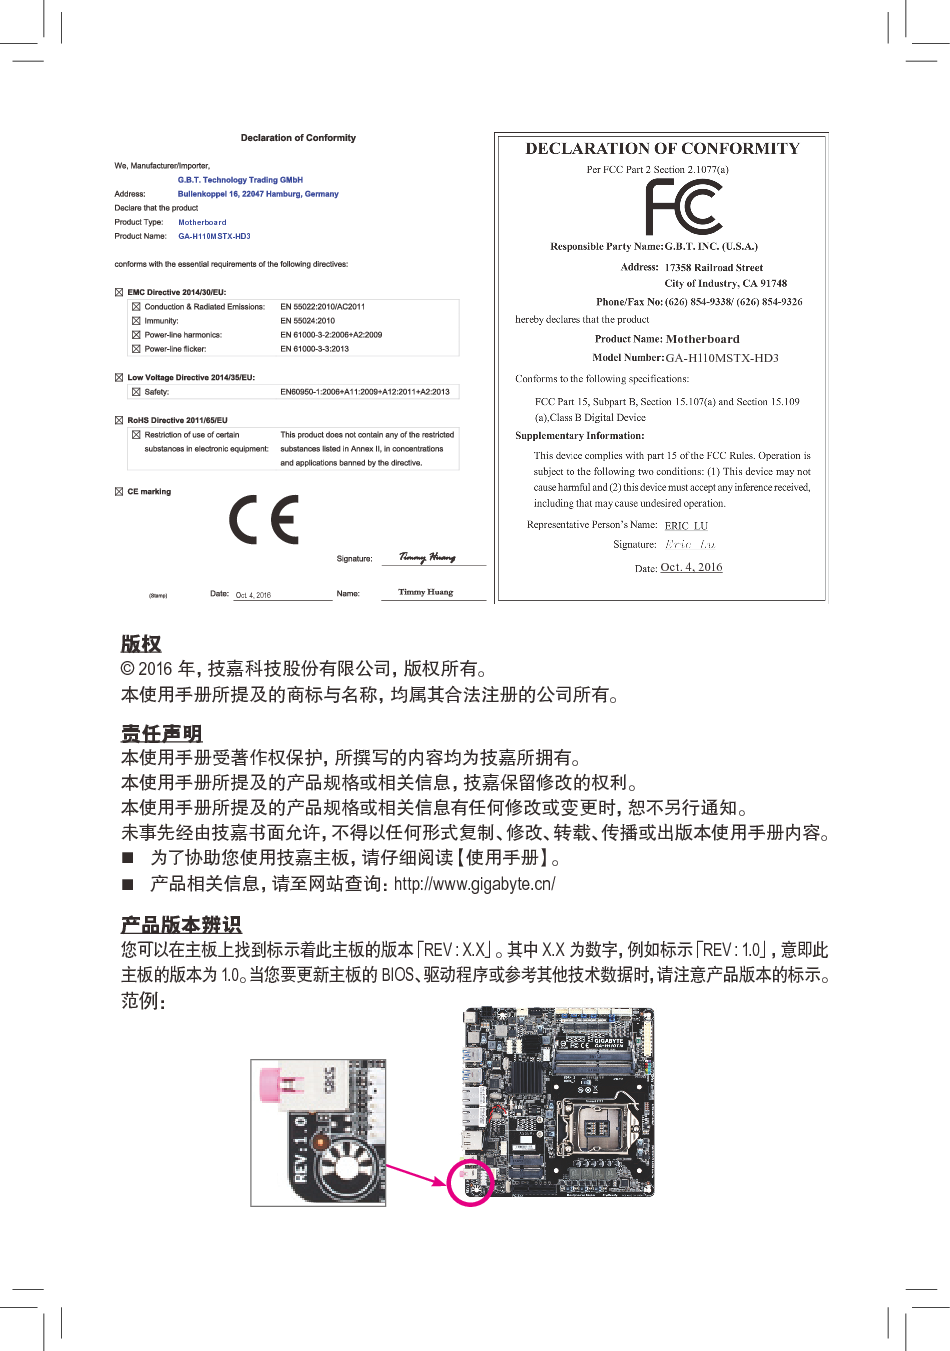 技嘉 Gigabyte GA-H110MSTX-HD3 使用手册 第1页